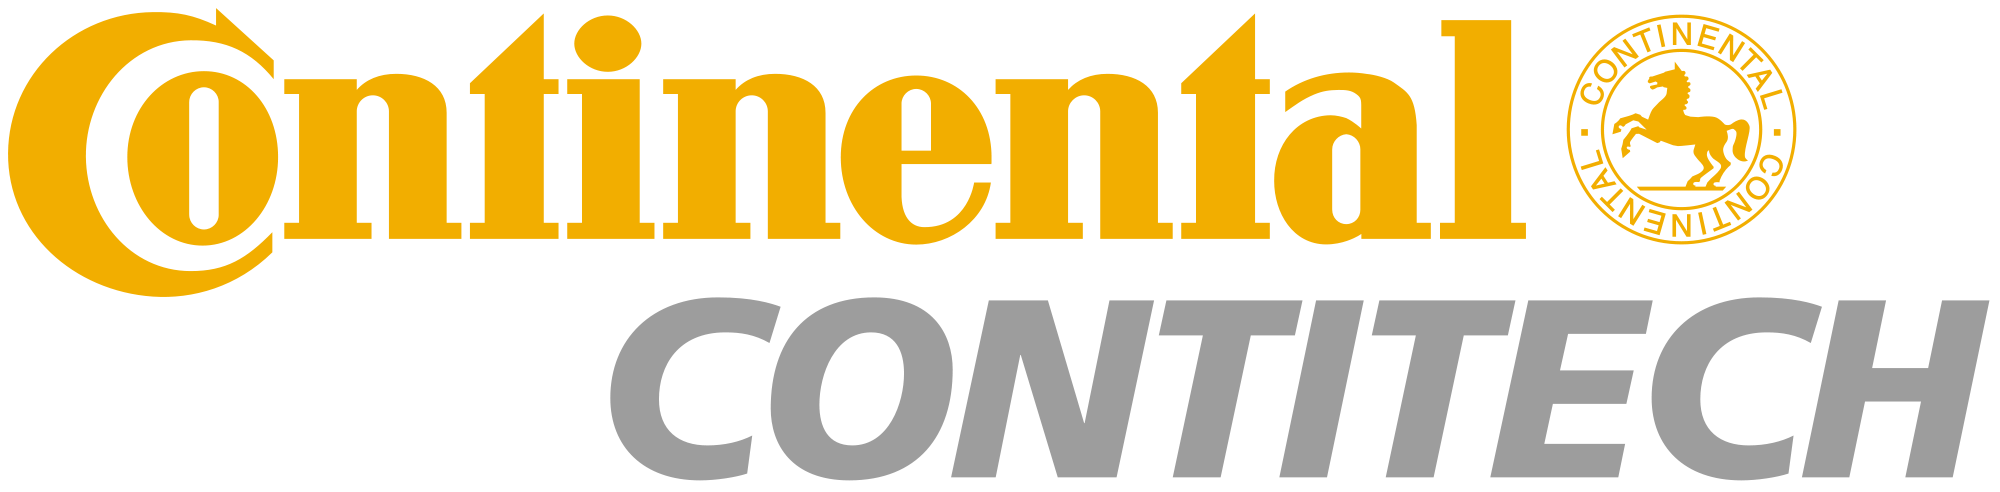 ContiTech-logo copy.png